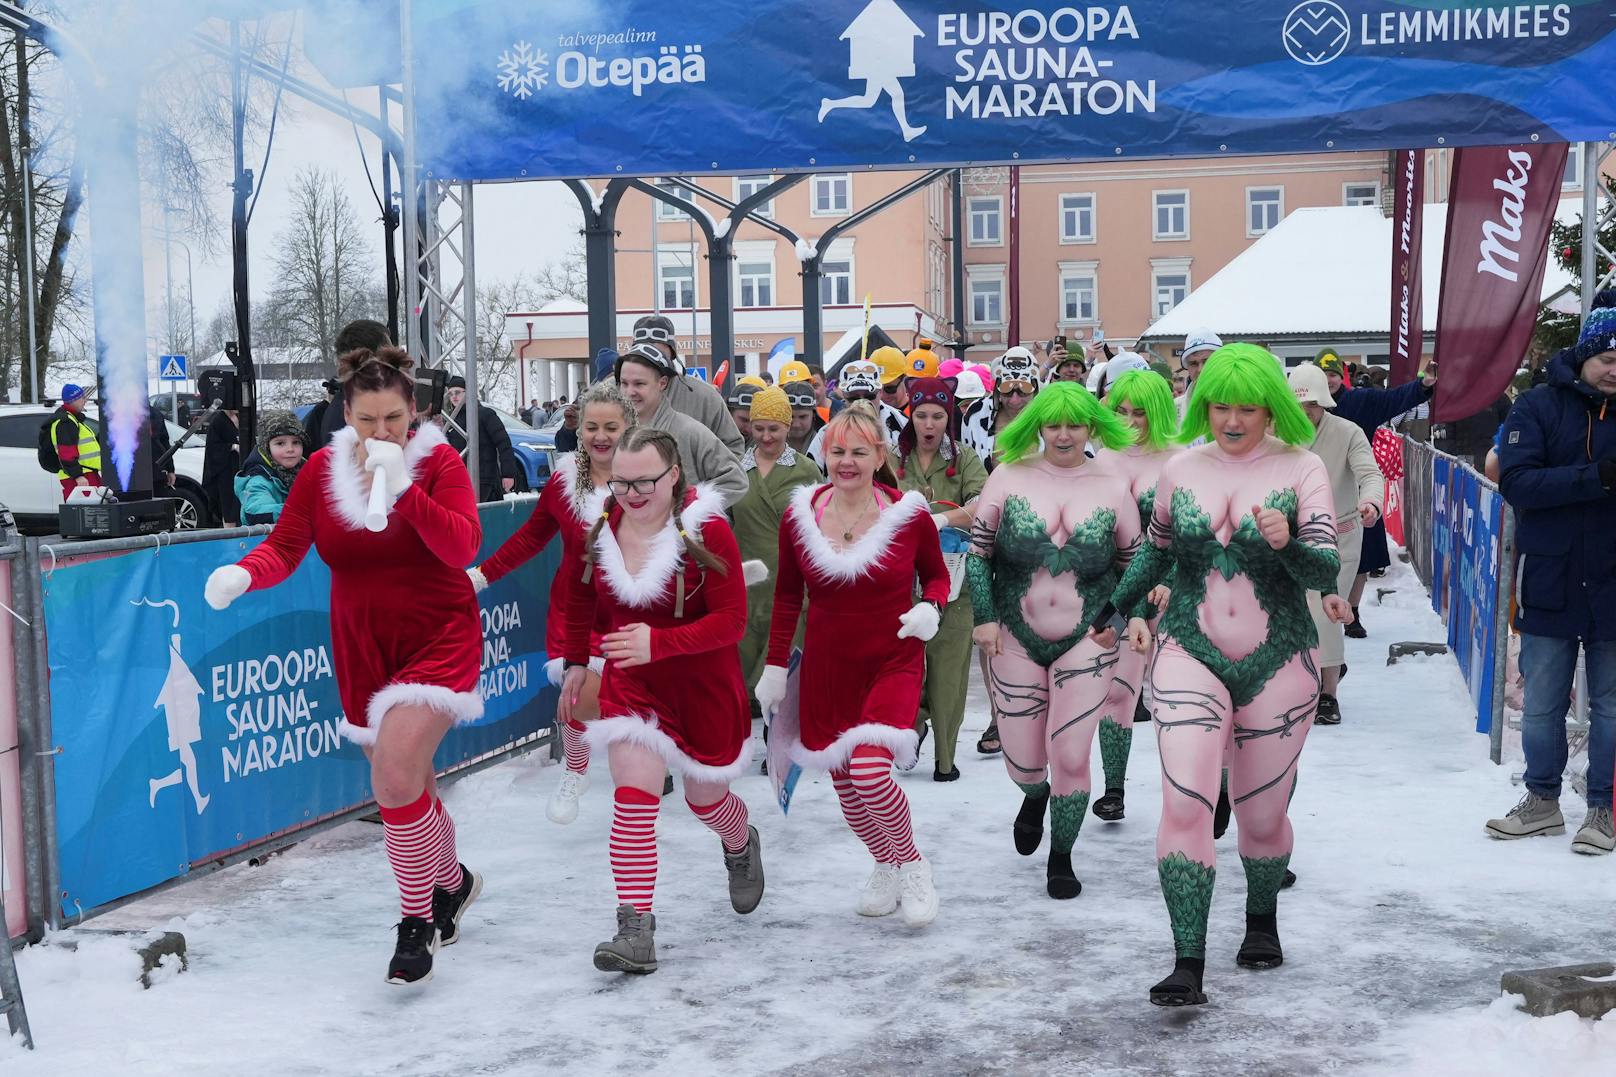 Hitze, Ehrgeiz, Alkohol: Knapp tausend Teilnehmer feierten am Sonntag den Saunamarathon in Estland – teilweise mit sonderbaren Kostümen.